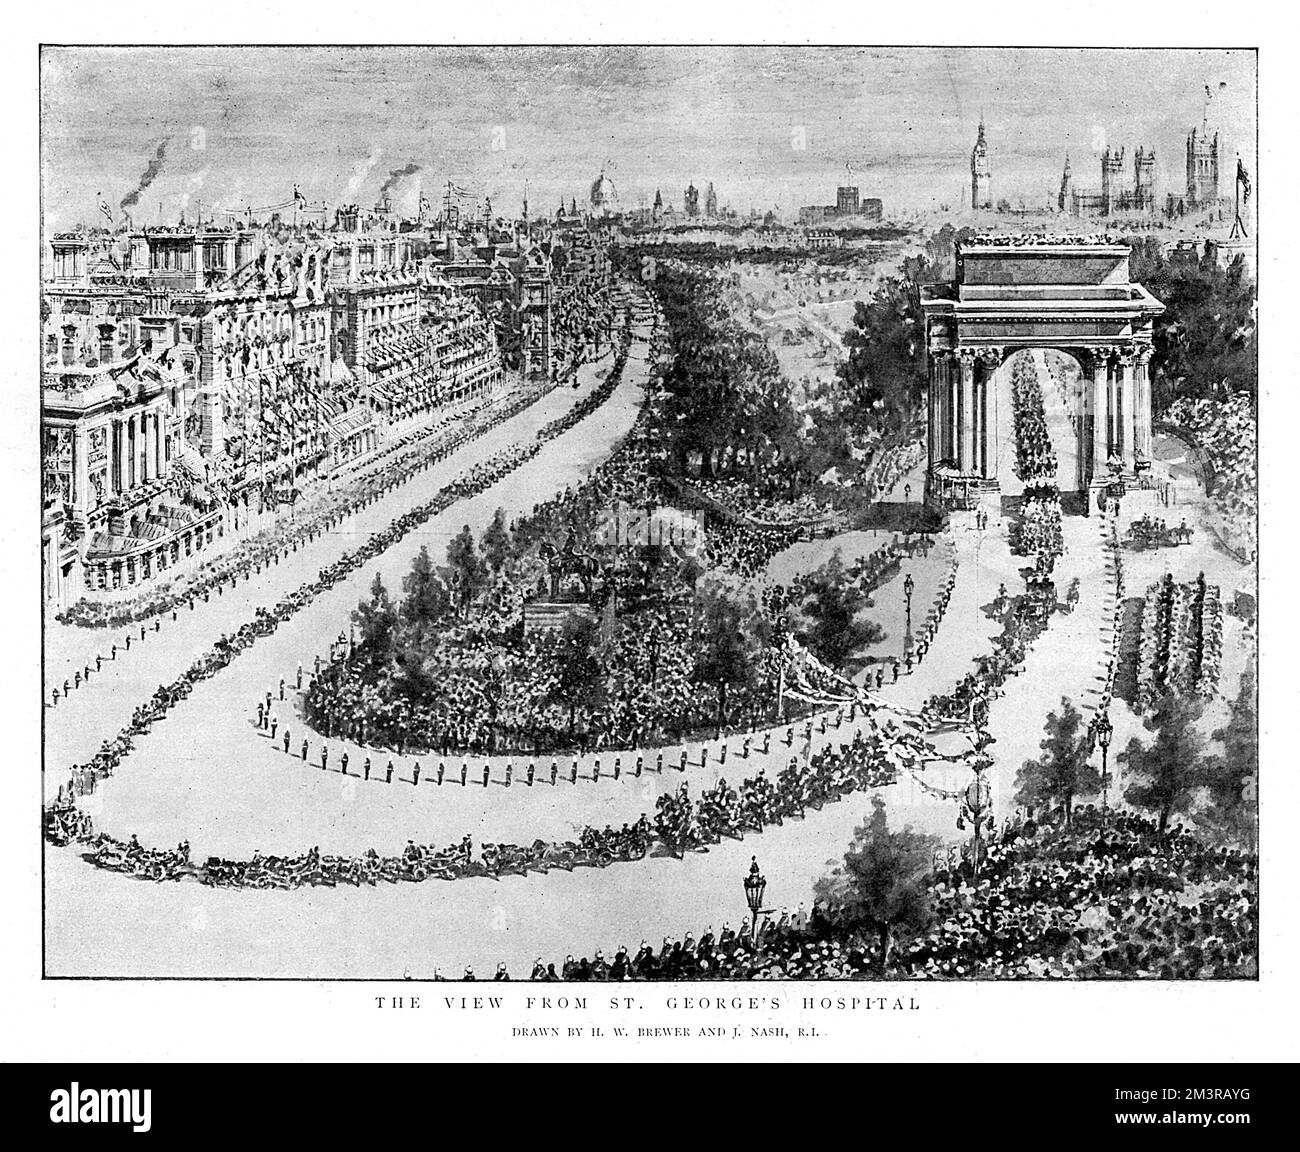 Vue aérienne des célébrations du Jubilé de la reine Victoria à l'hôpital St George le 20 juin 1897, avec le passage de la procession. Date : 20 juin 1897 Banque D'Images